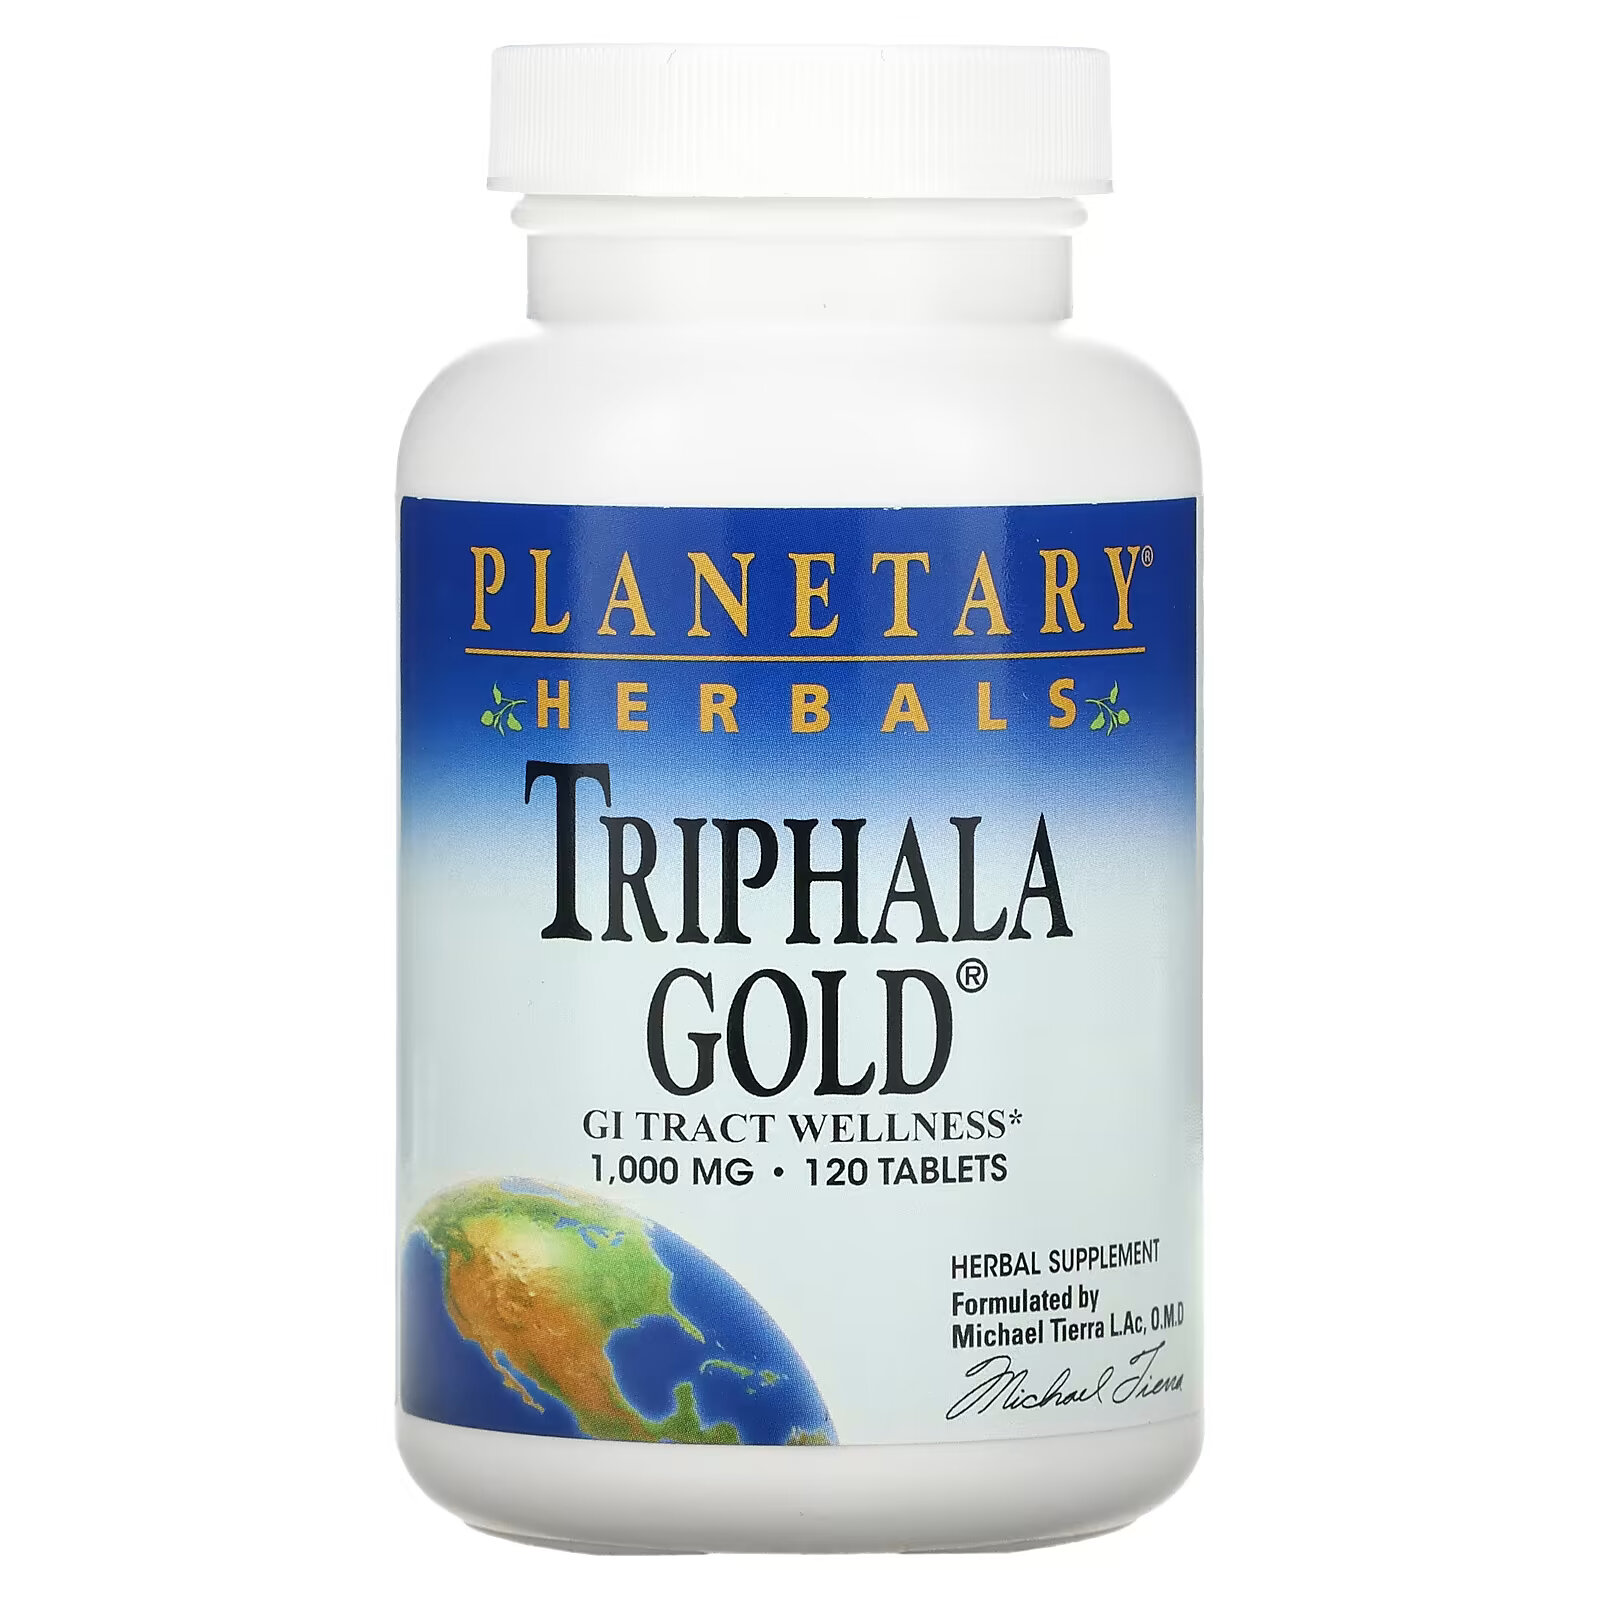 planetary herbals triphala здоровье желудочно кишечного тракта 1000 мг 180 таблеток Planetary Herbals, Triphala Gold, здоровье желудочно-кишечного тракта, 1,000 мг, 120 таблеток